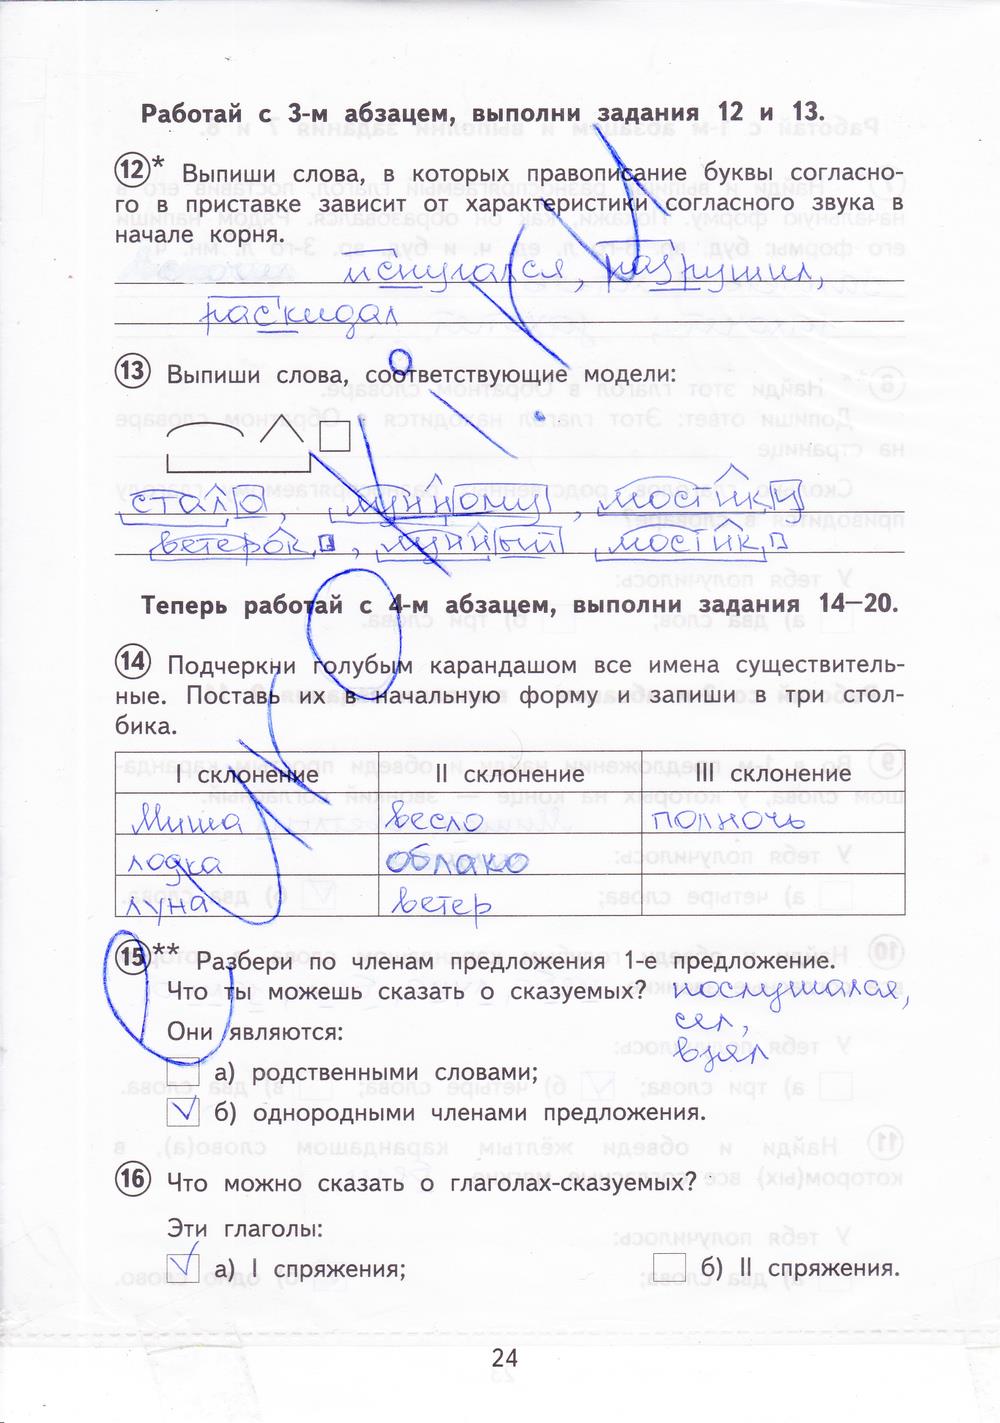 Русский язык проверочная работа 3 класс страница